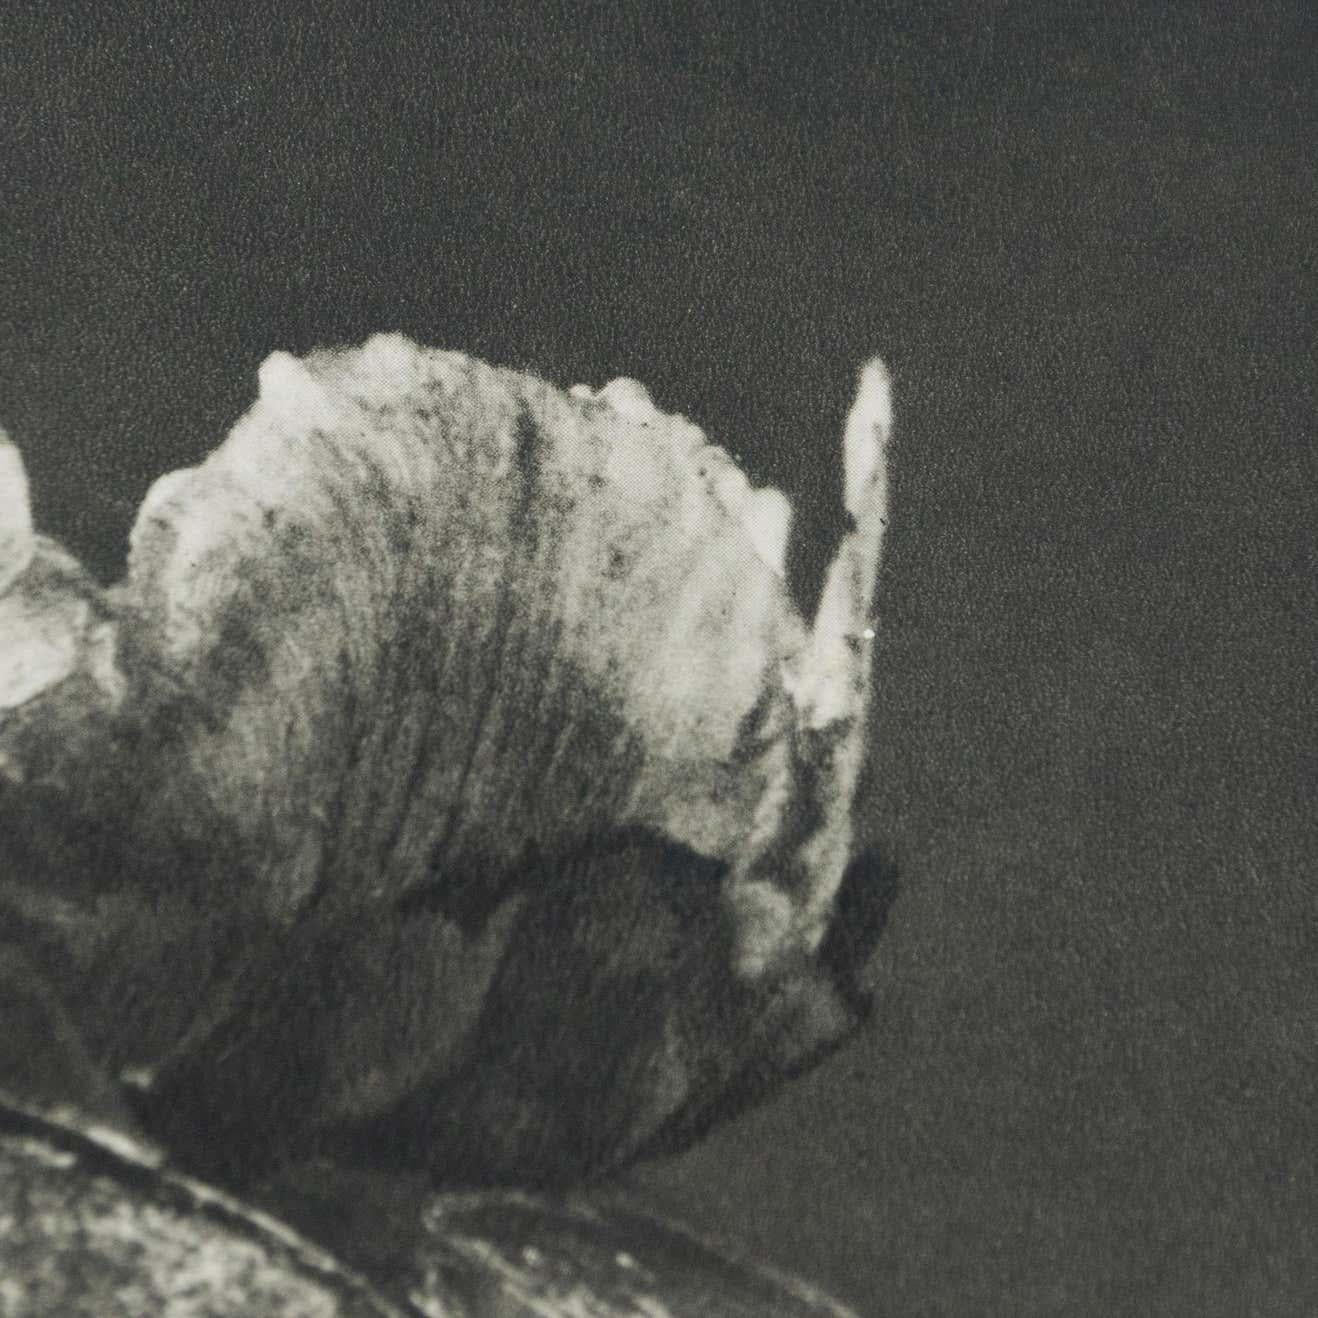 Karl Blossfeldt Black White Flower Photogravure Botanic Photography, 1942 In Good Condition For Sale In Barcelona, Barcelona